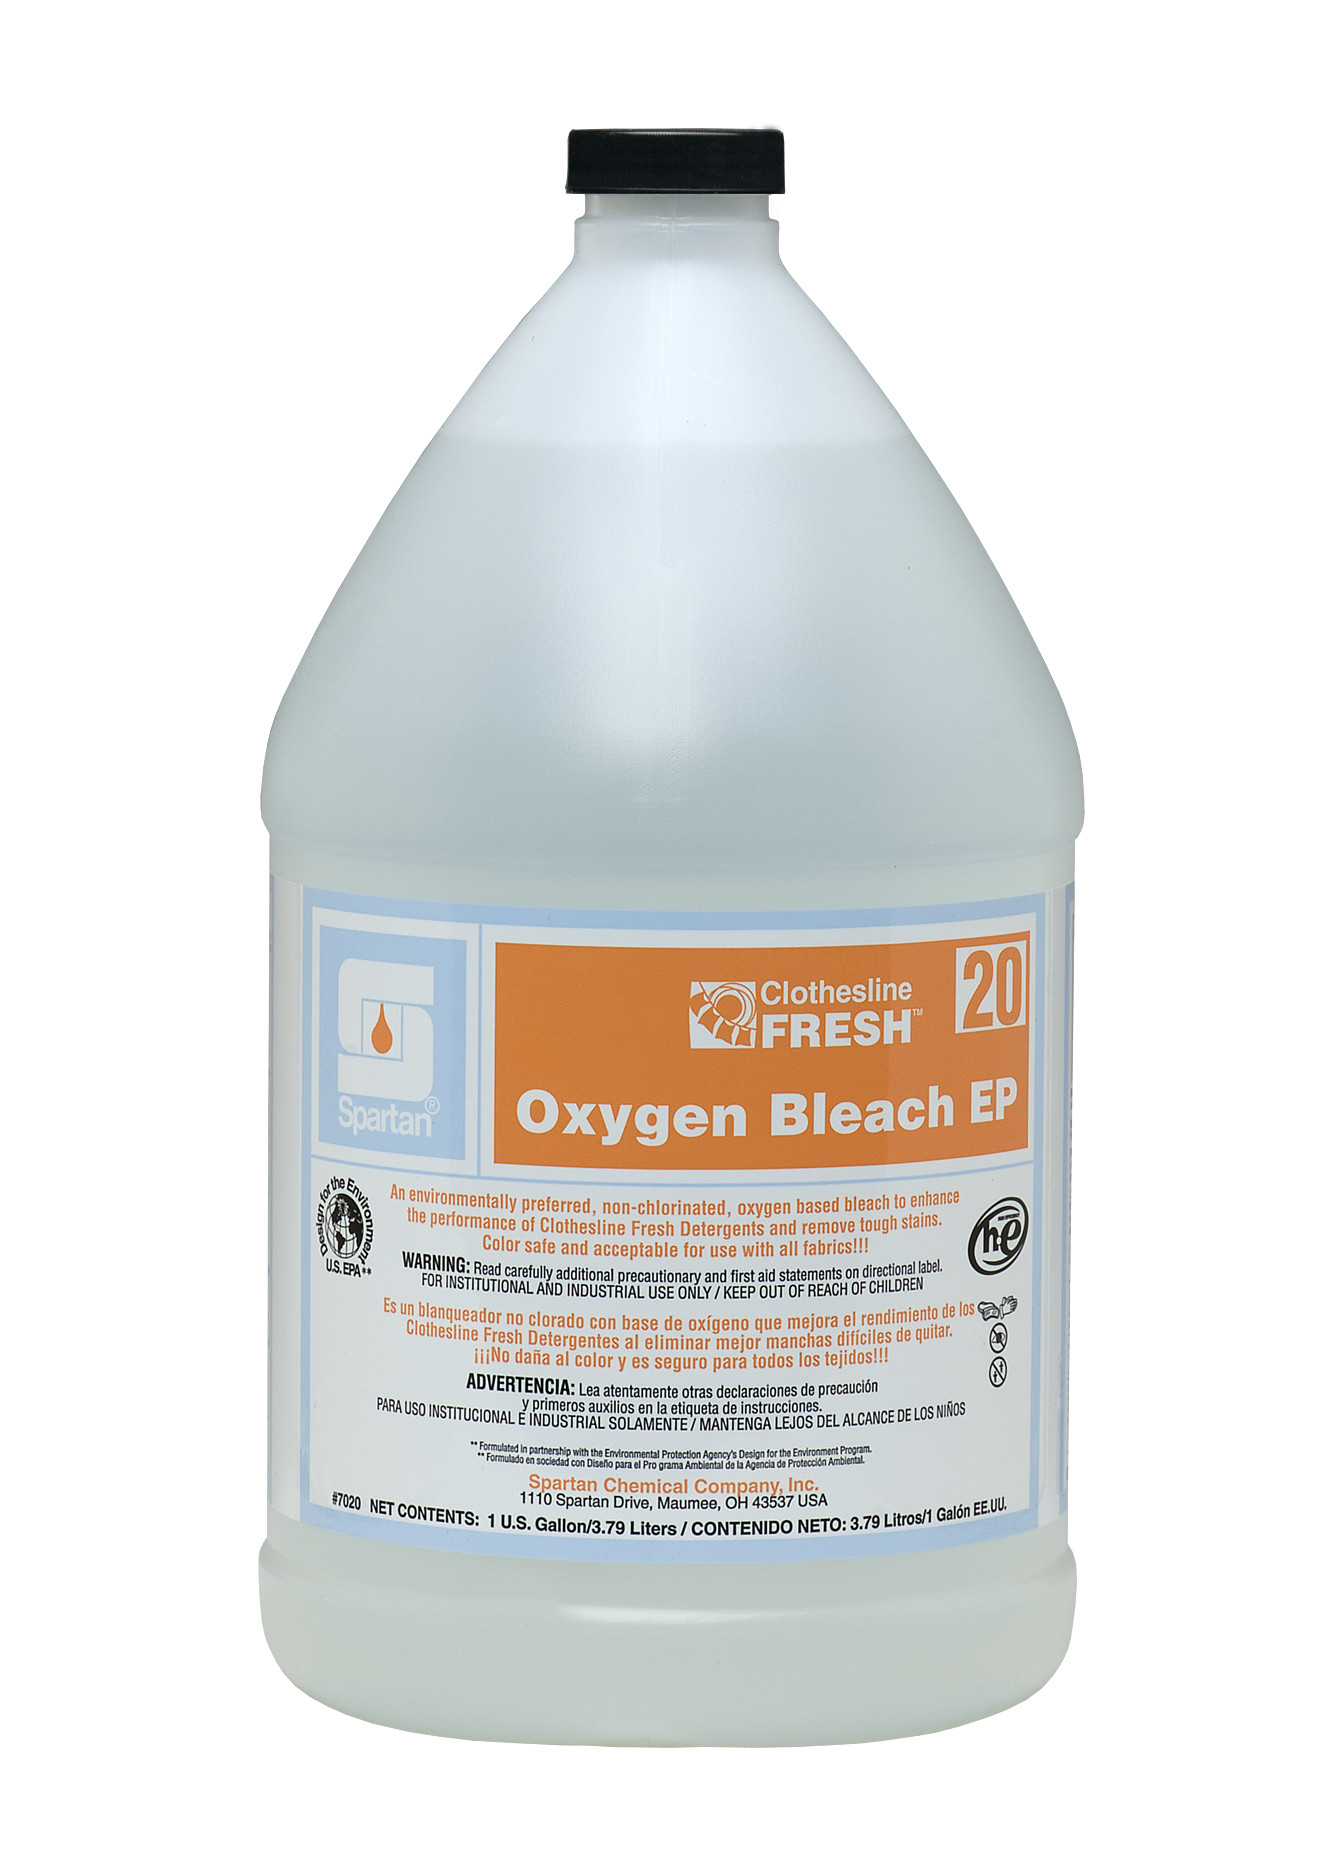 Spartan Chemical Company Clothesline Fresh Oxygen Bleach EP 20, 1 GAL 4/CSE